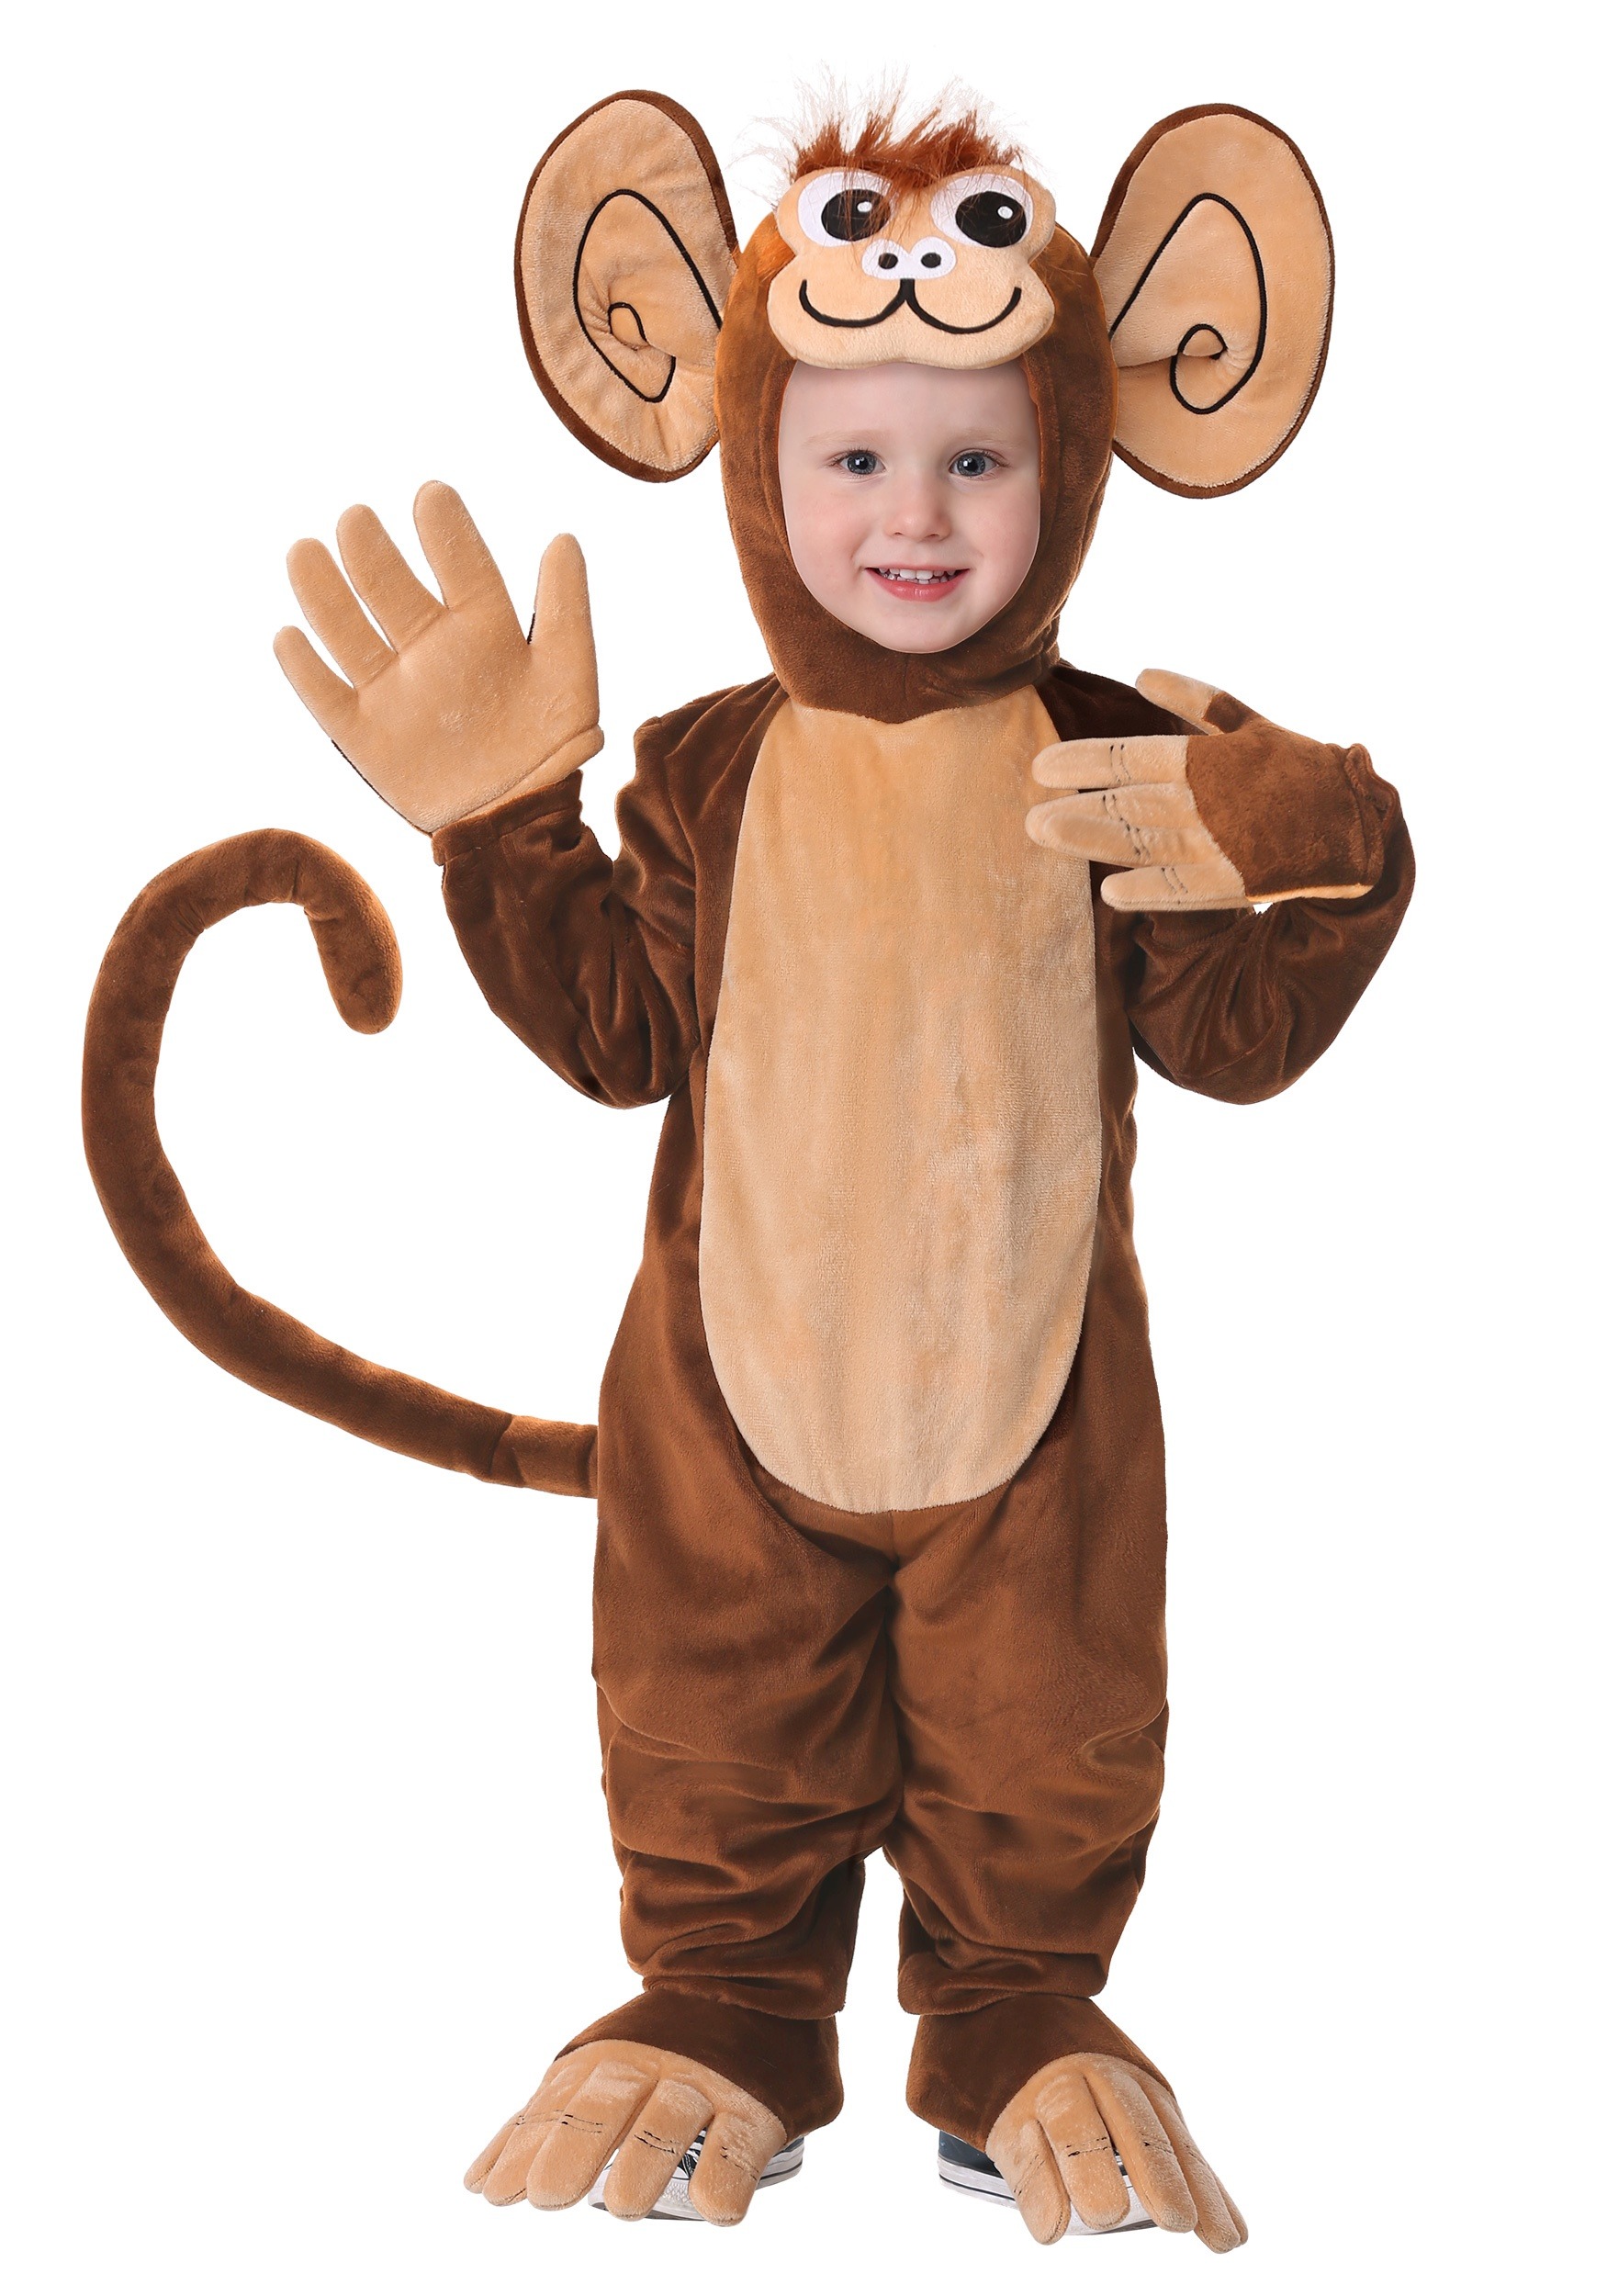 redbridge library monkey costume